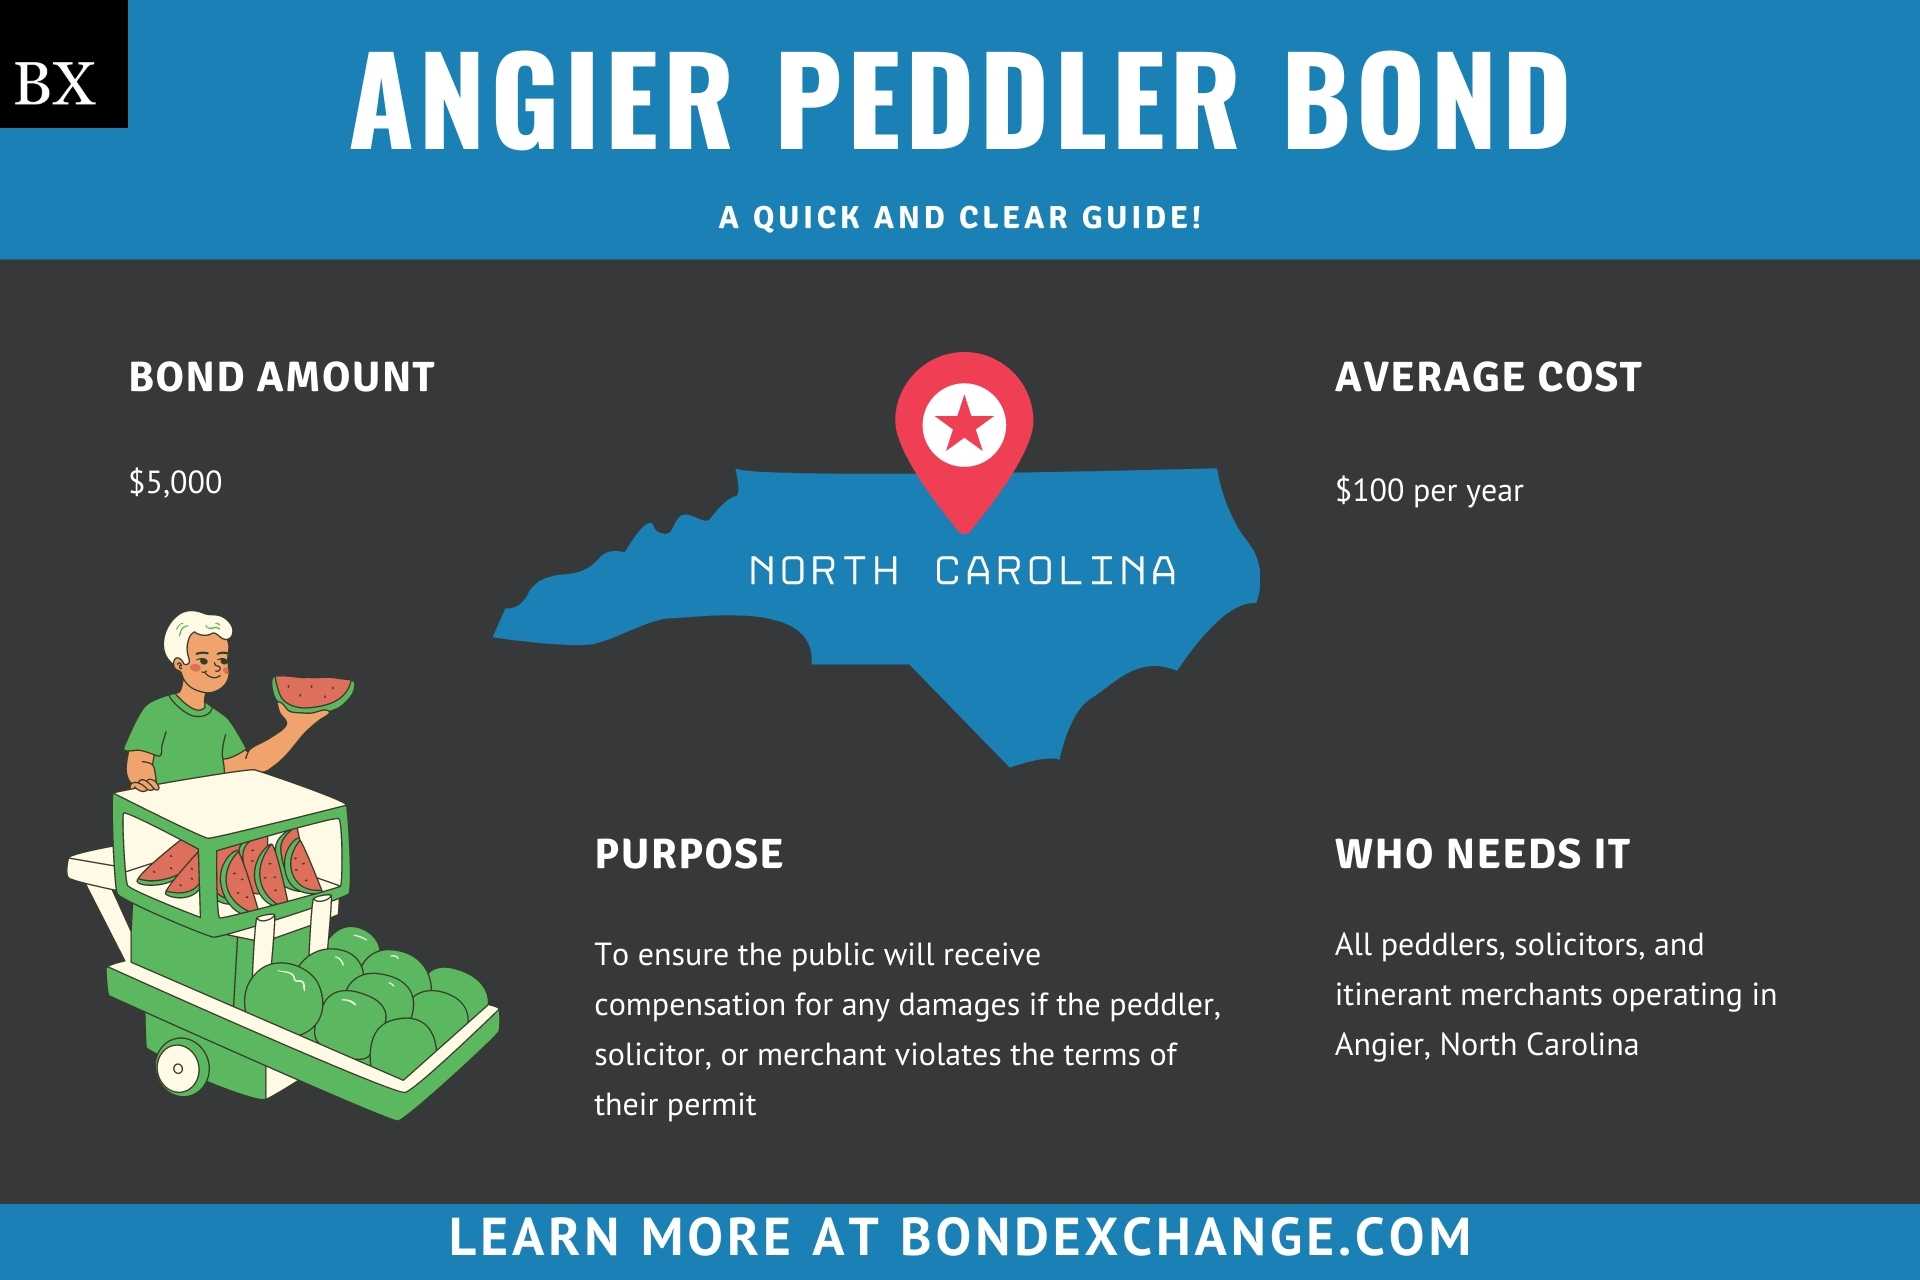 Angier Peddler Bond